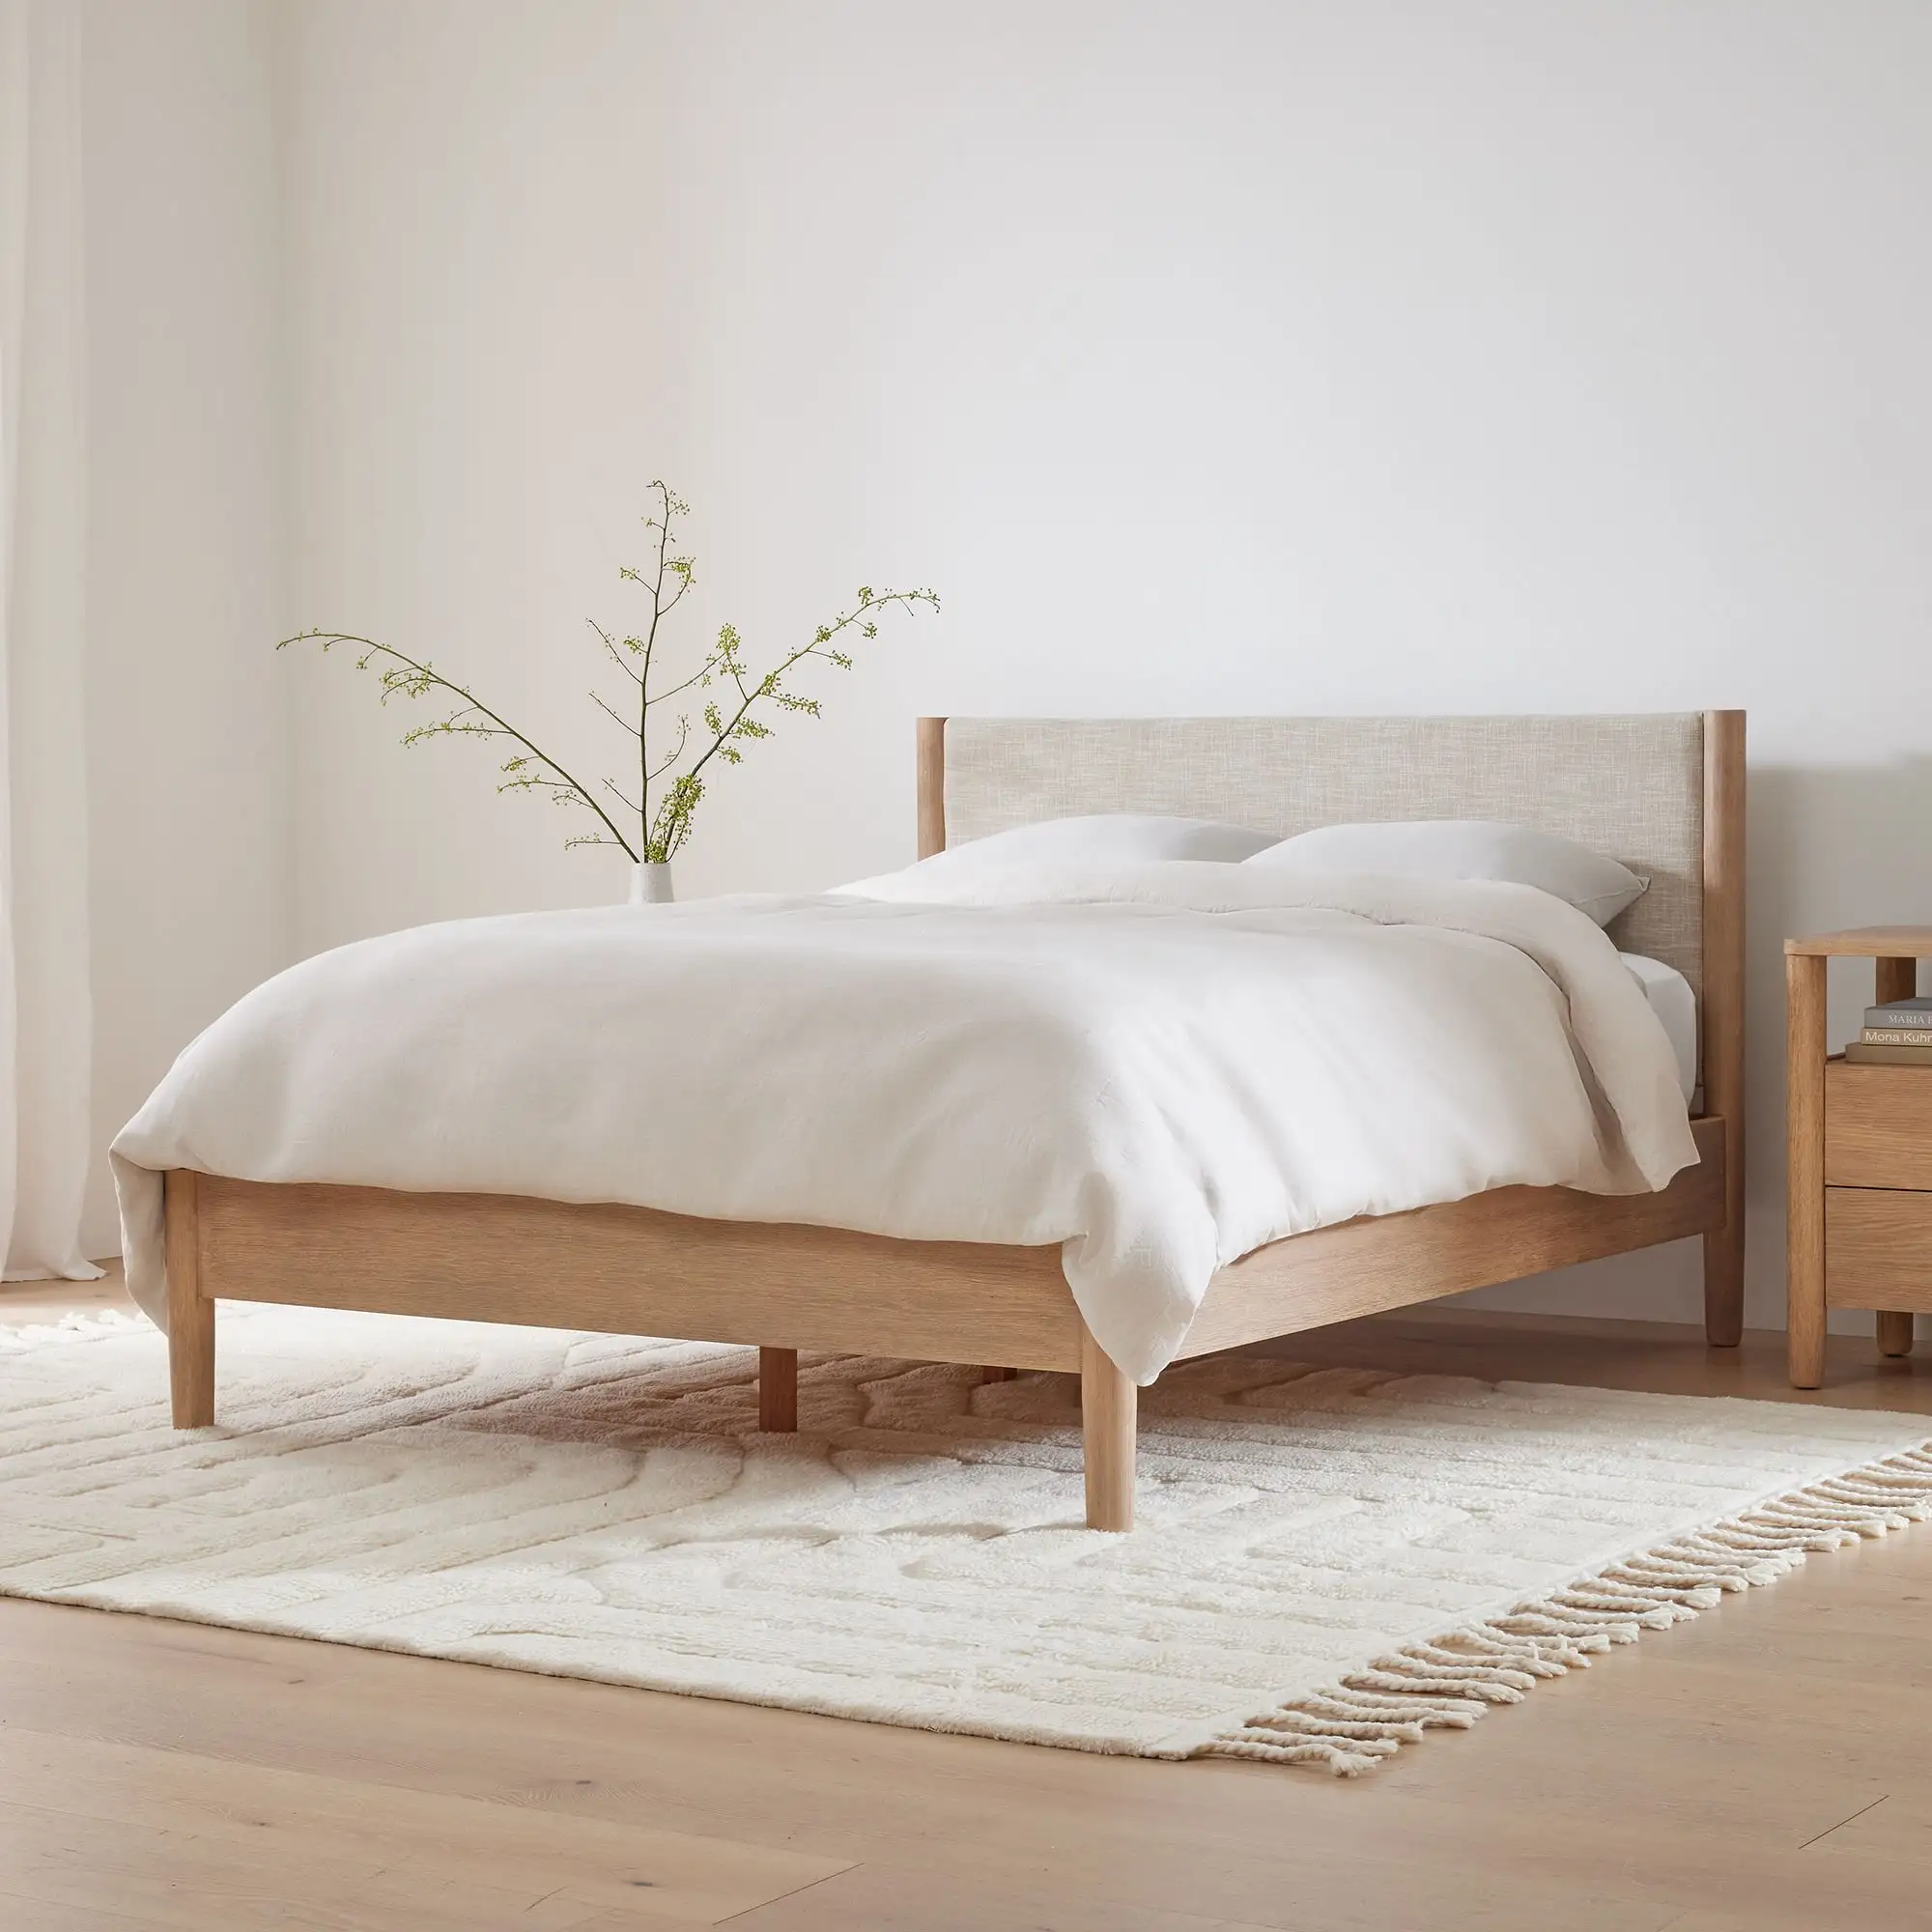 Cama de madeira maciça de madeira maciça infantil mobília do quarto econômica camas